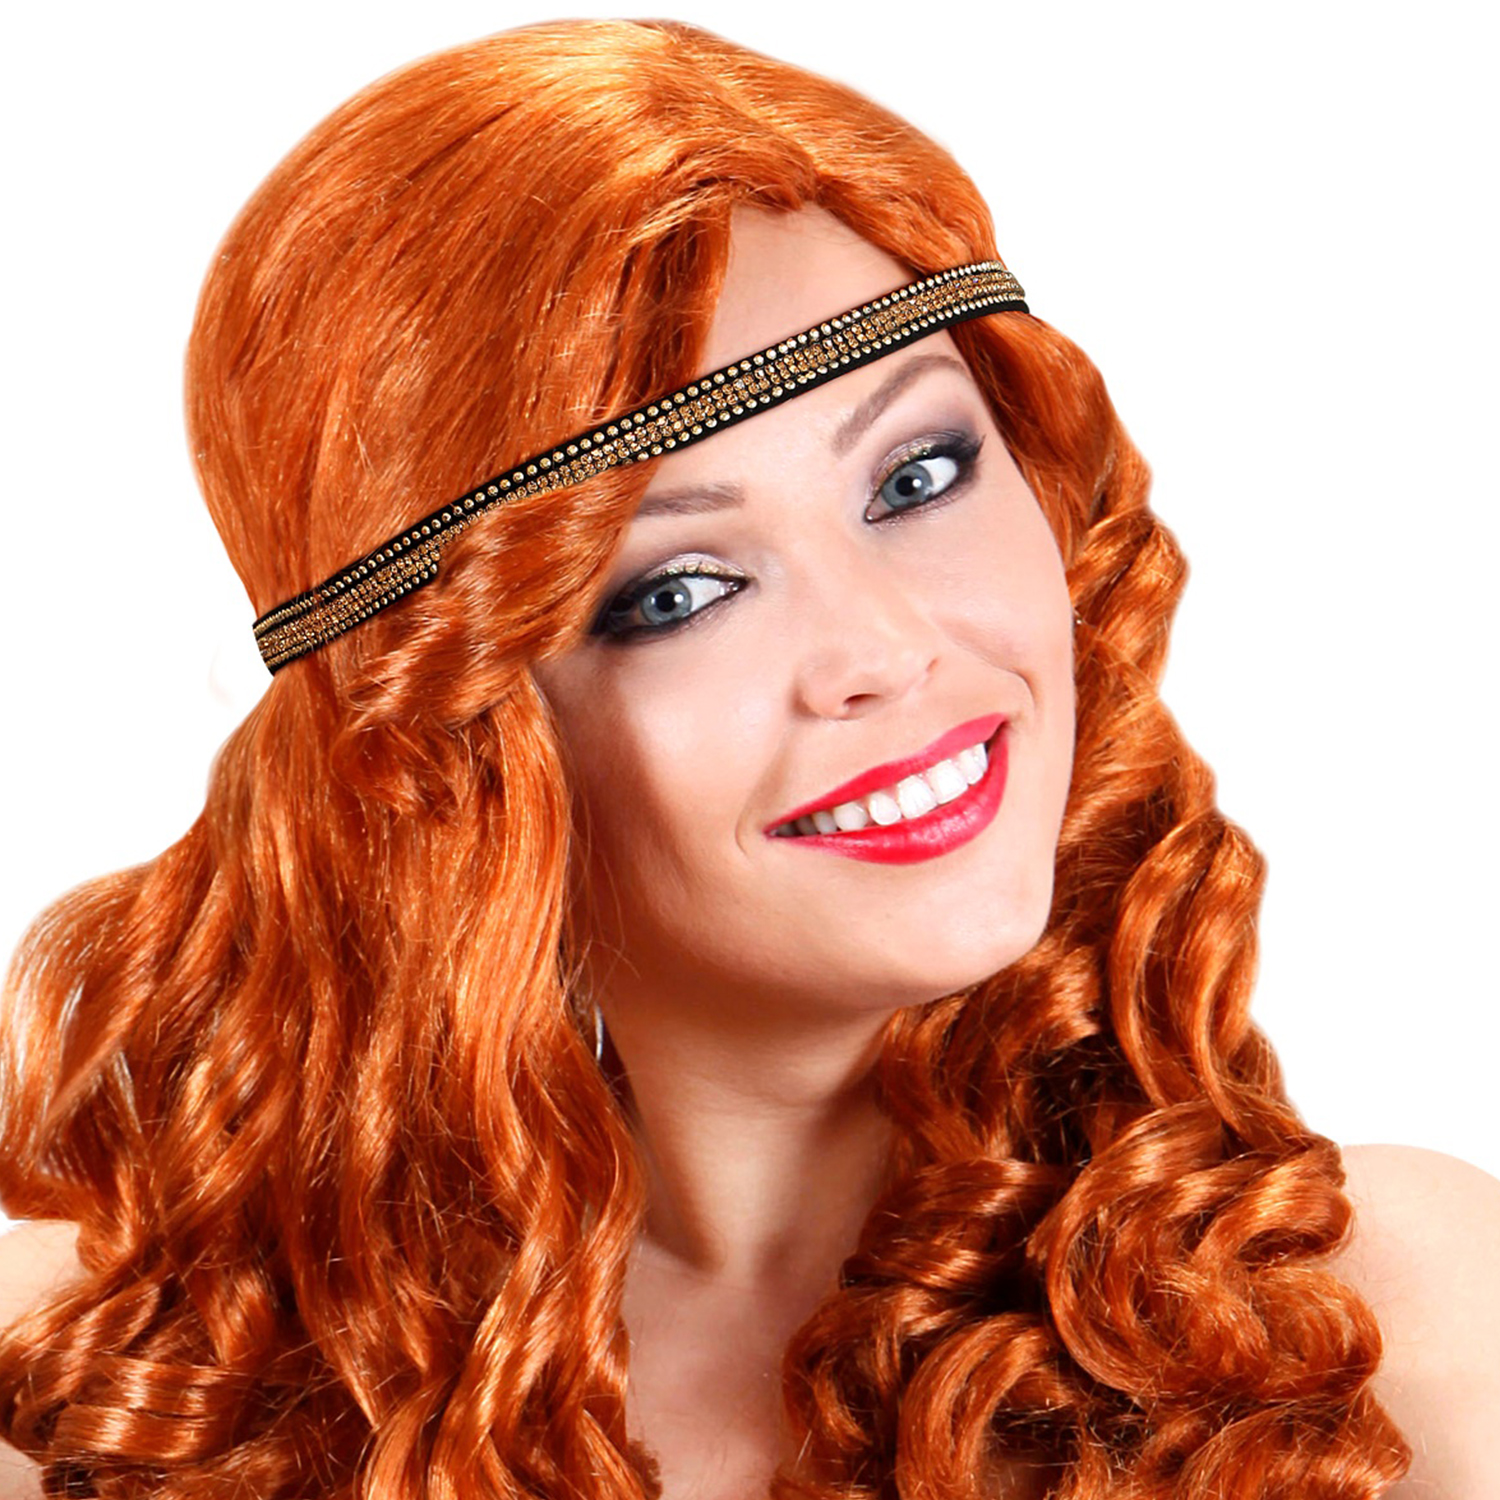 NEU Stirnband / Haarreif Charleston 20er-Jahre Cabaret Stirnband, Farbe: schwarz-gold